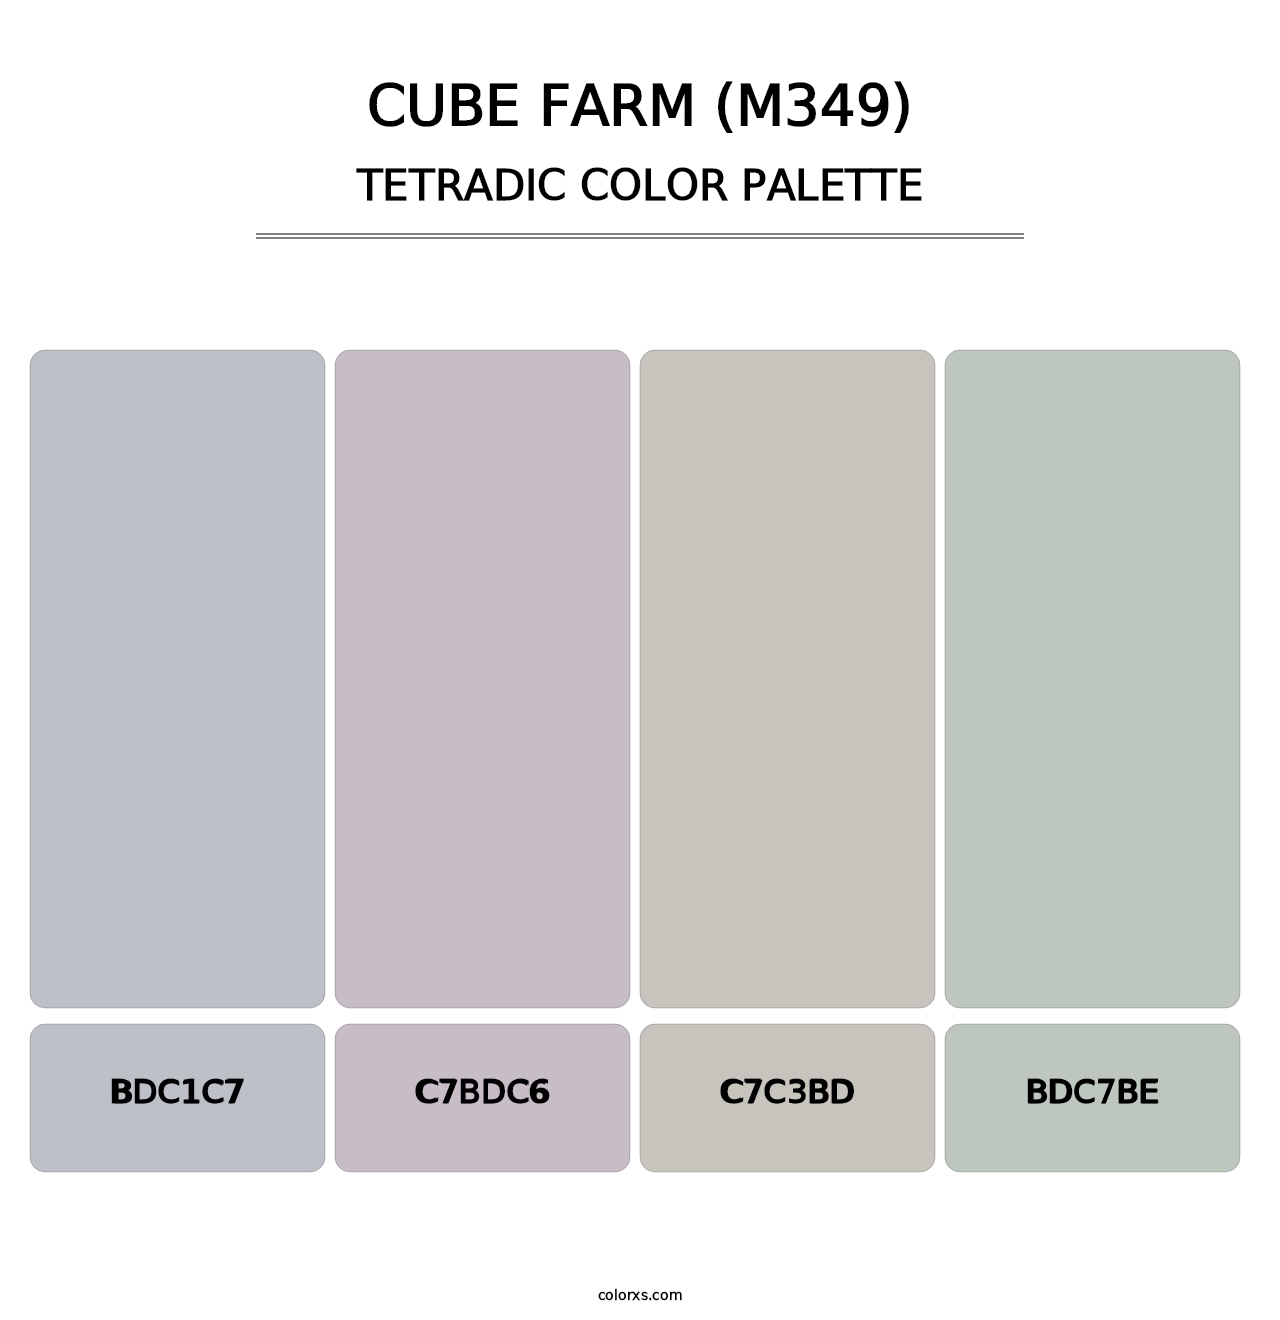 Cube Farm (M349) - Tetradic Color Palette